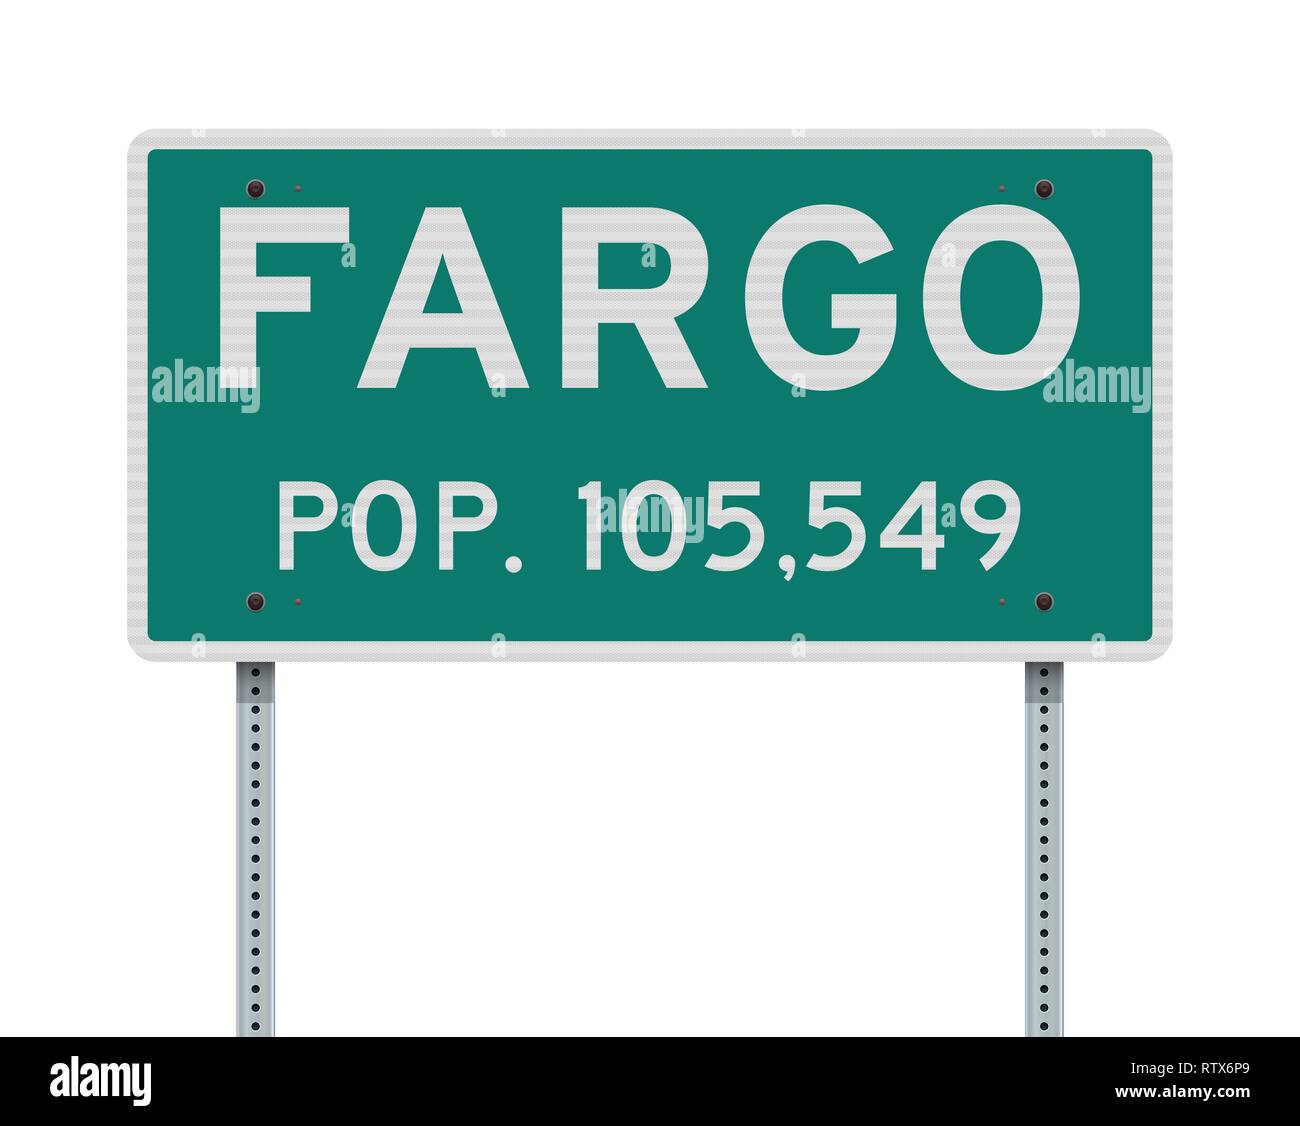 Vector Illustration der Fargo grün Eingang Schild mit Bevölkerung Anzahl Stock Vektor